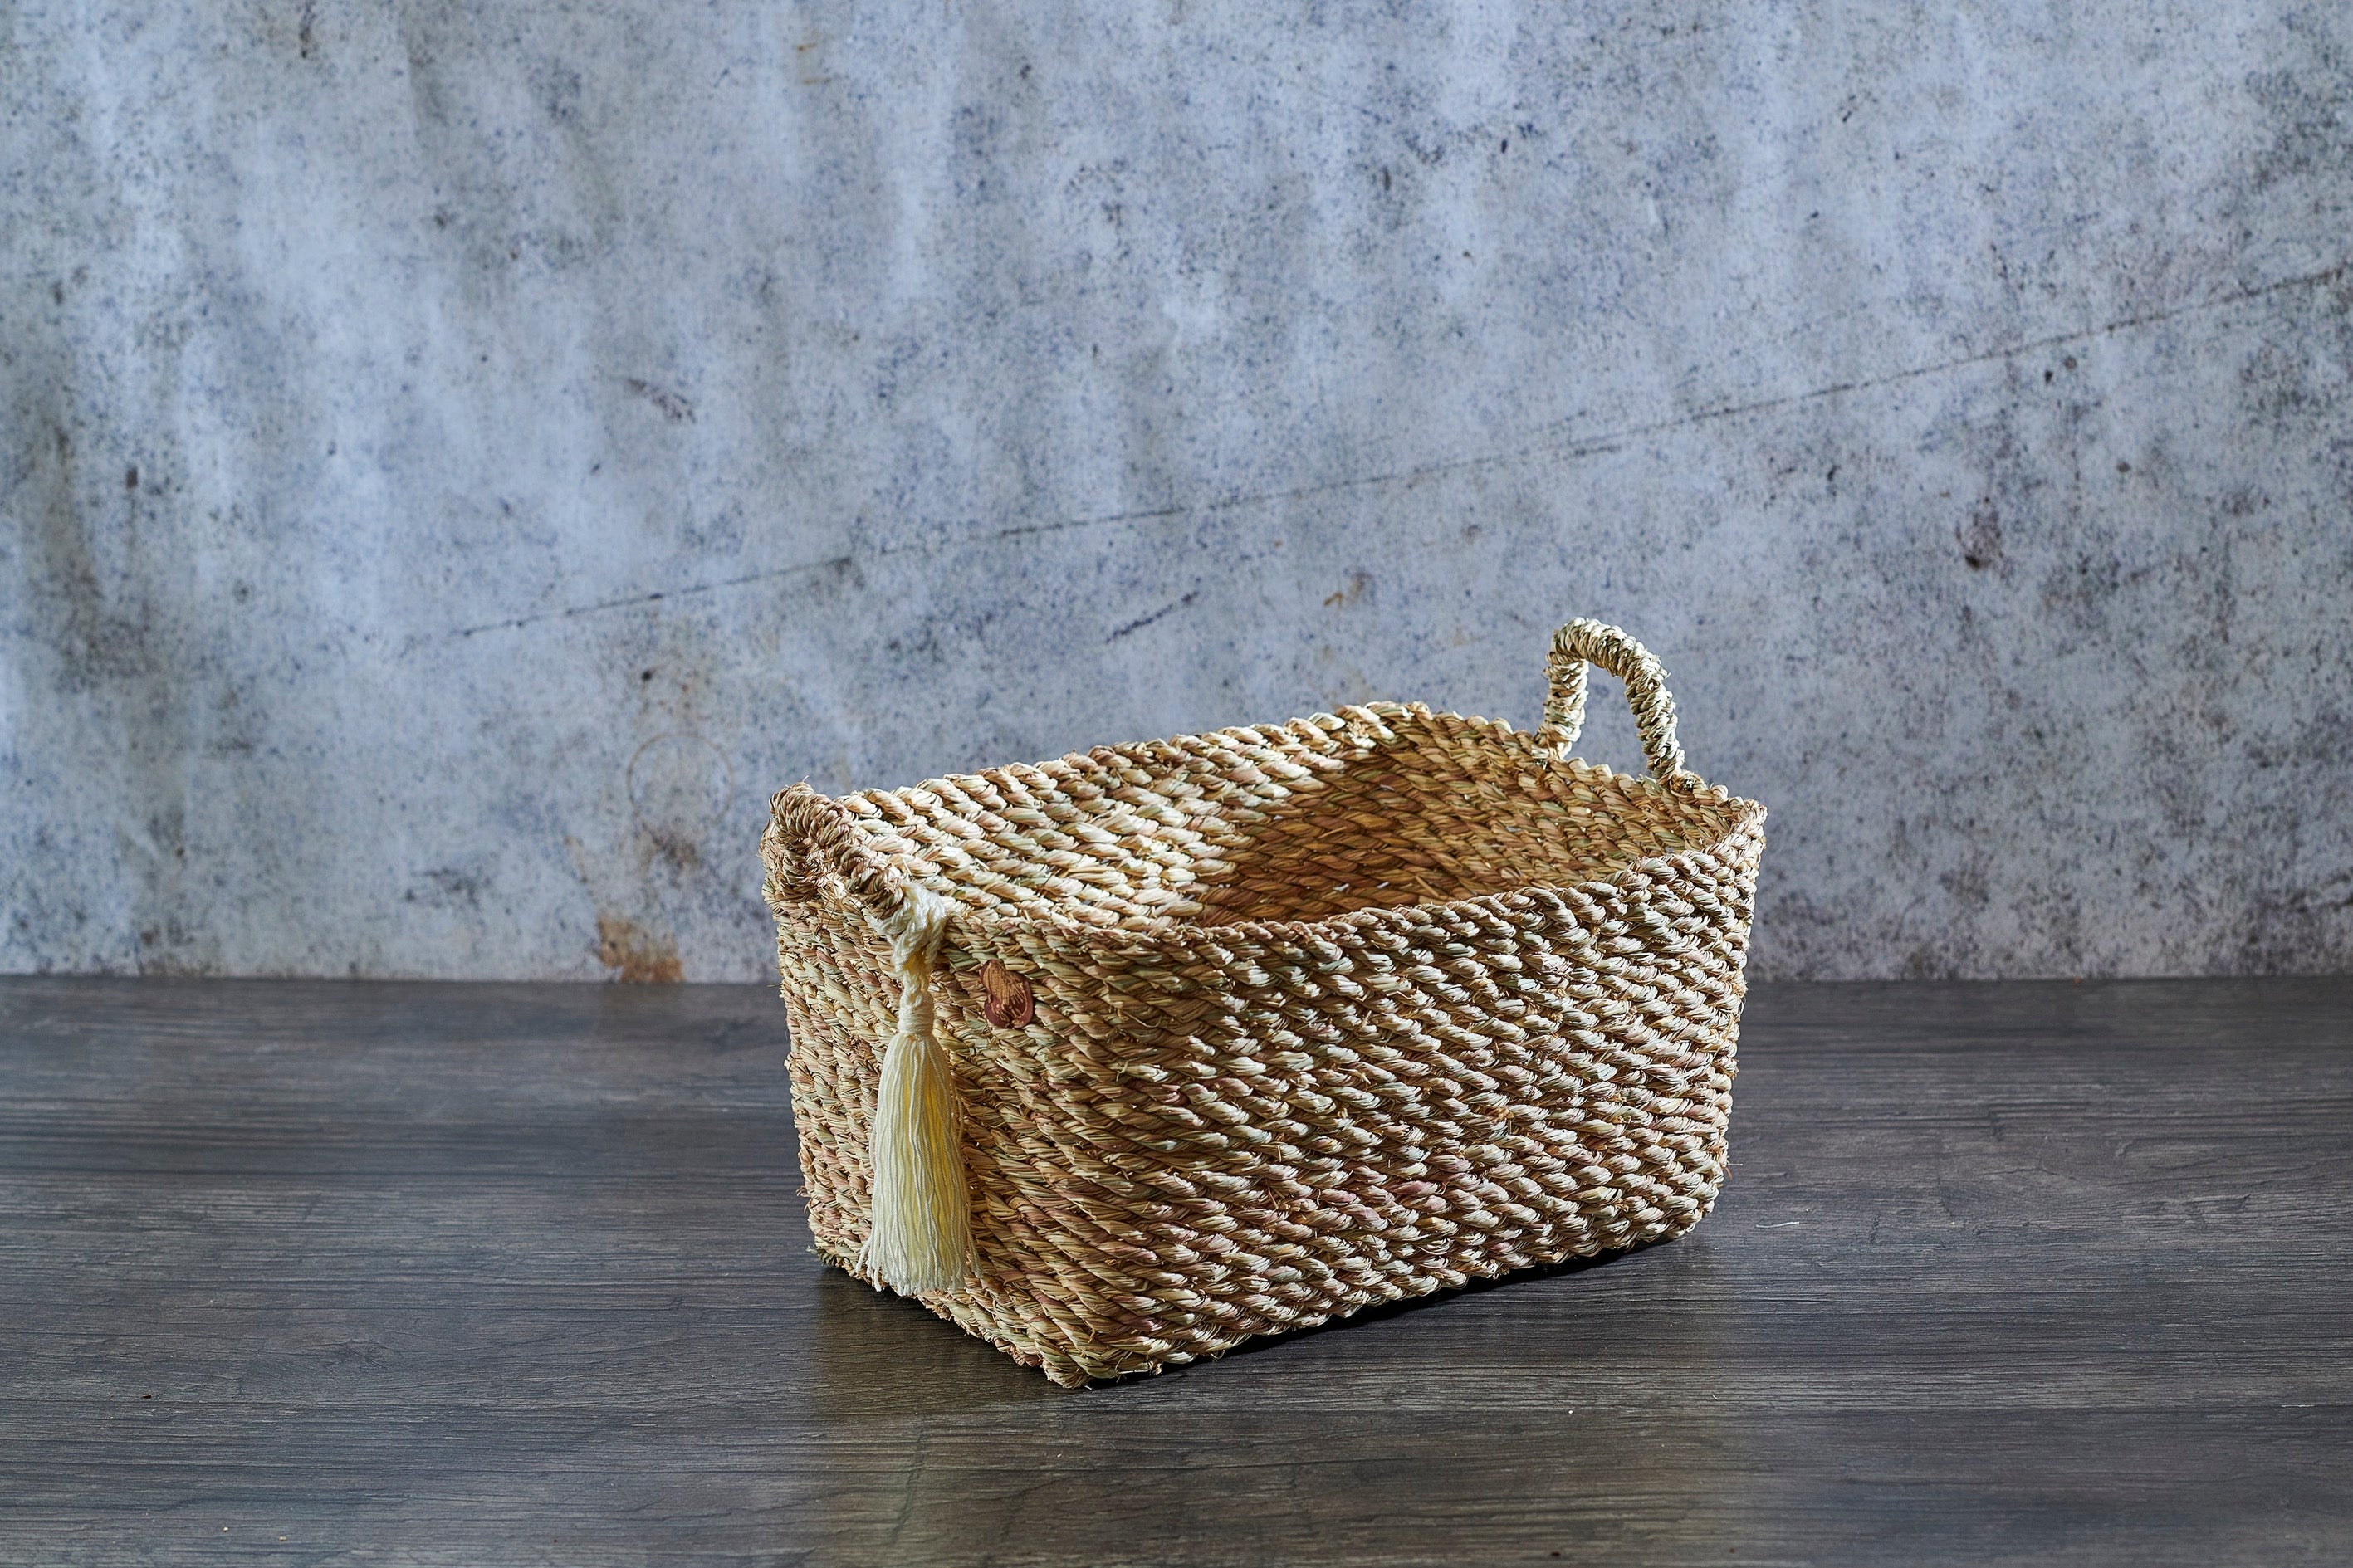 Halfa Rectangular Basket with Shershouba